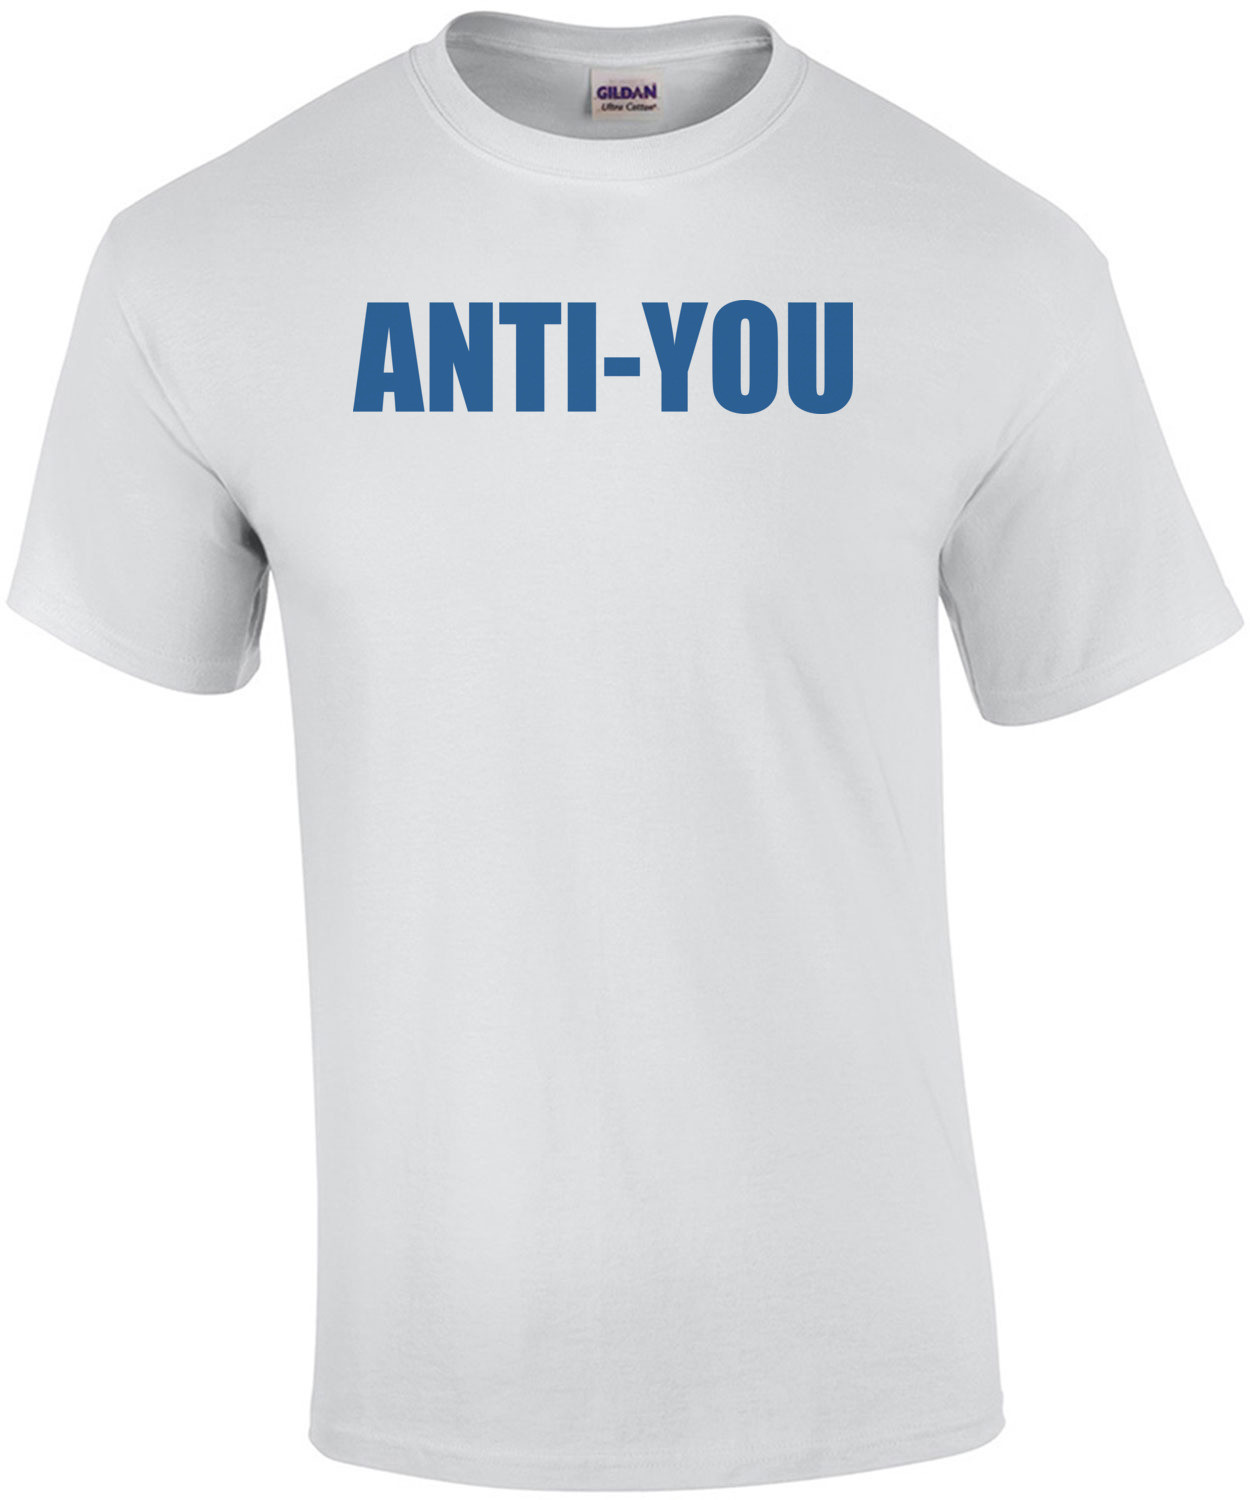 ANTI-YOU T-Shirt